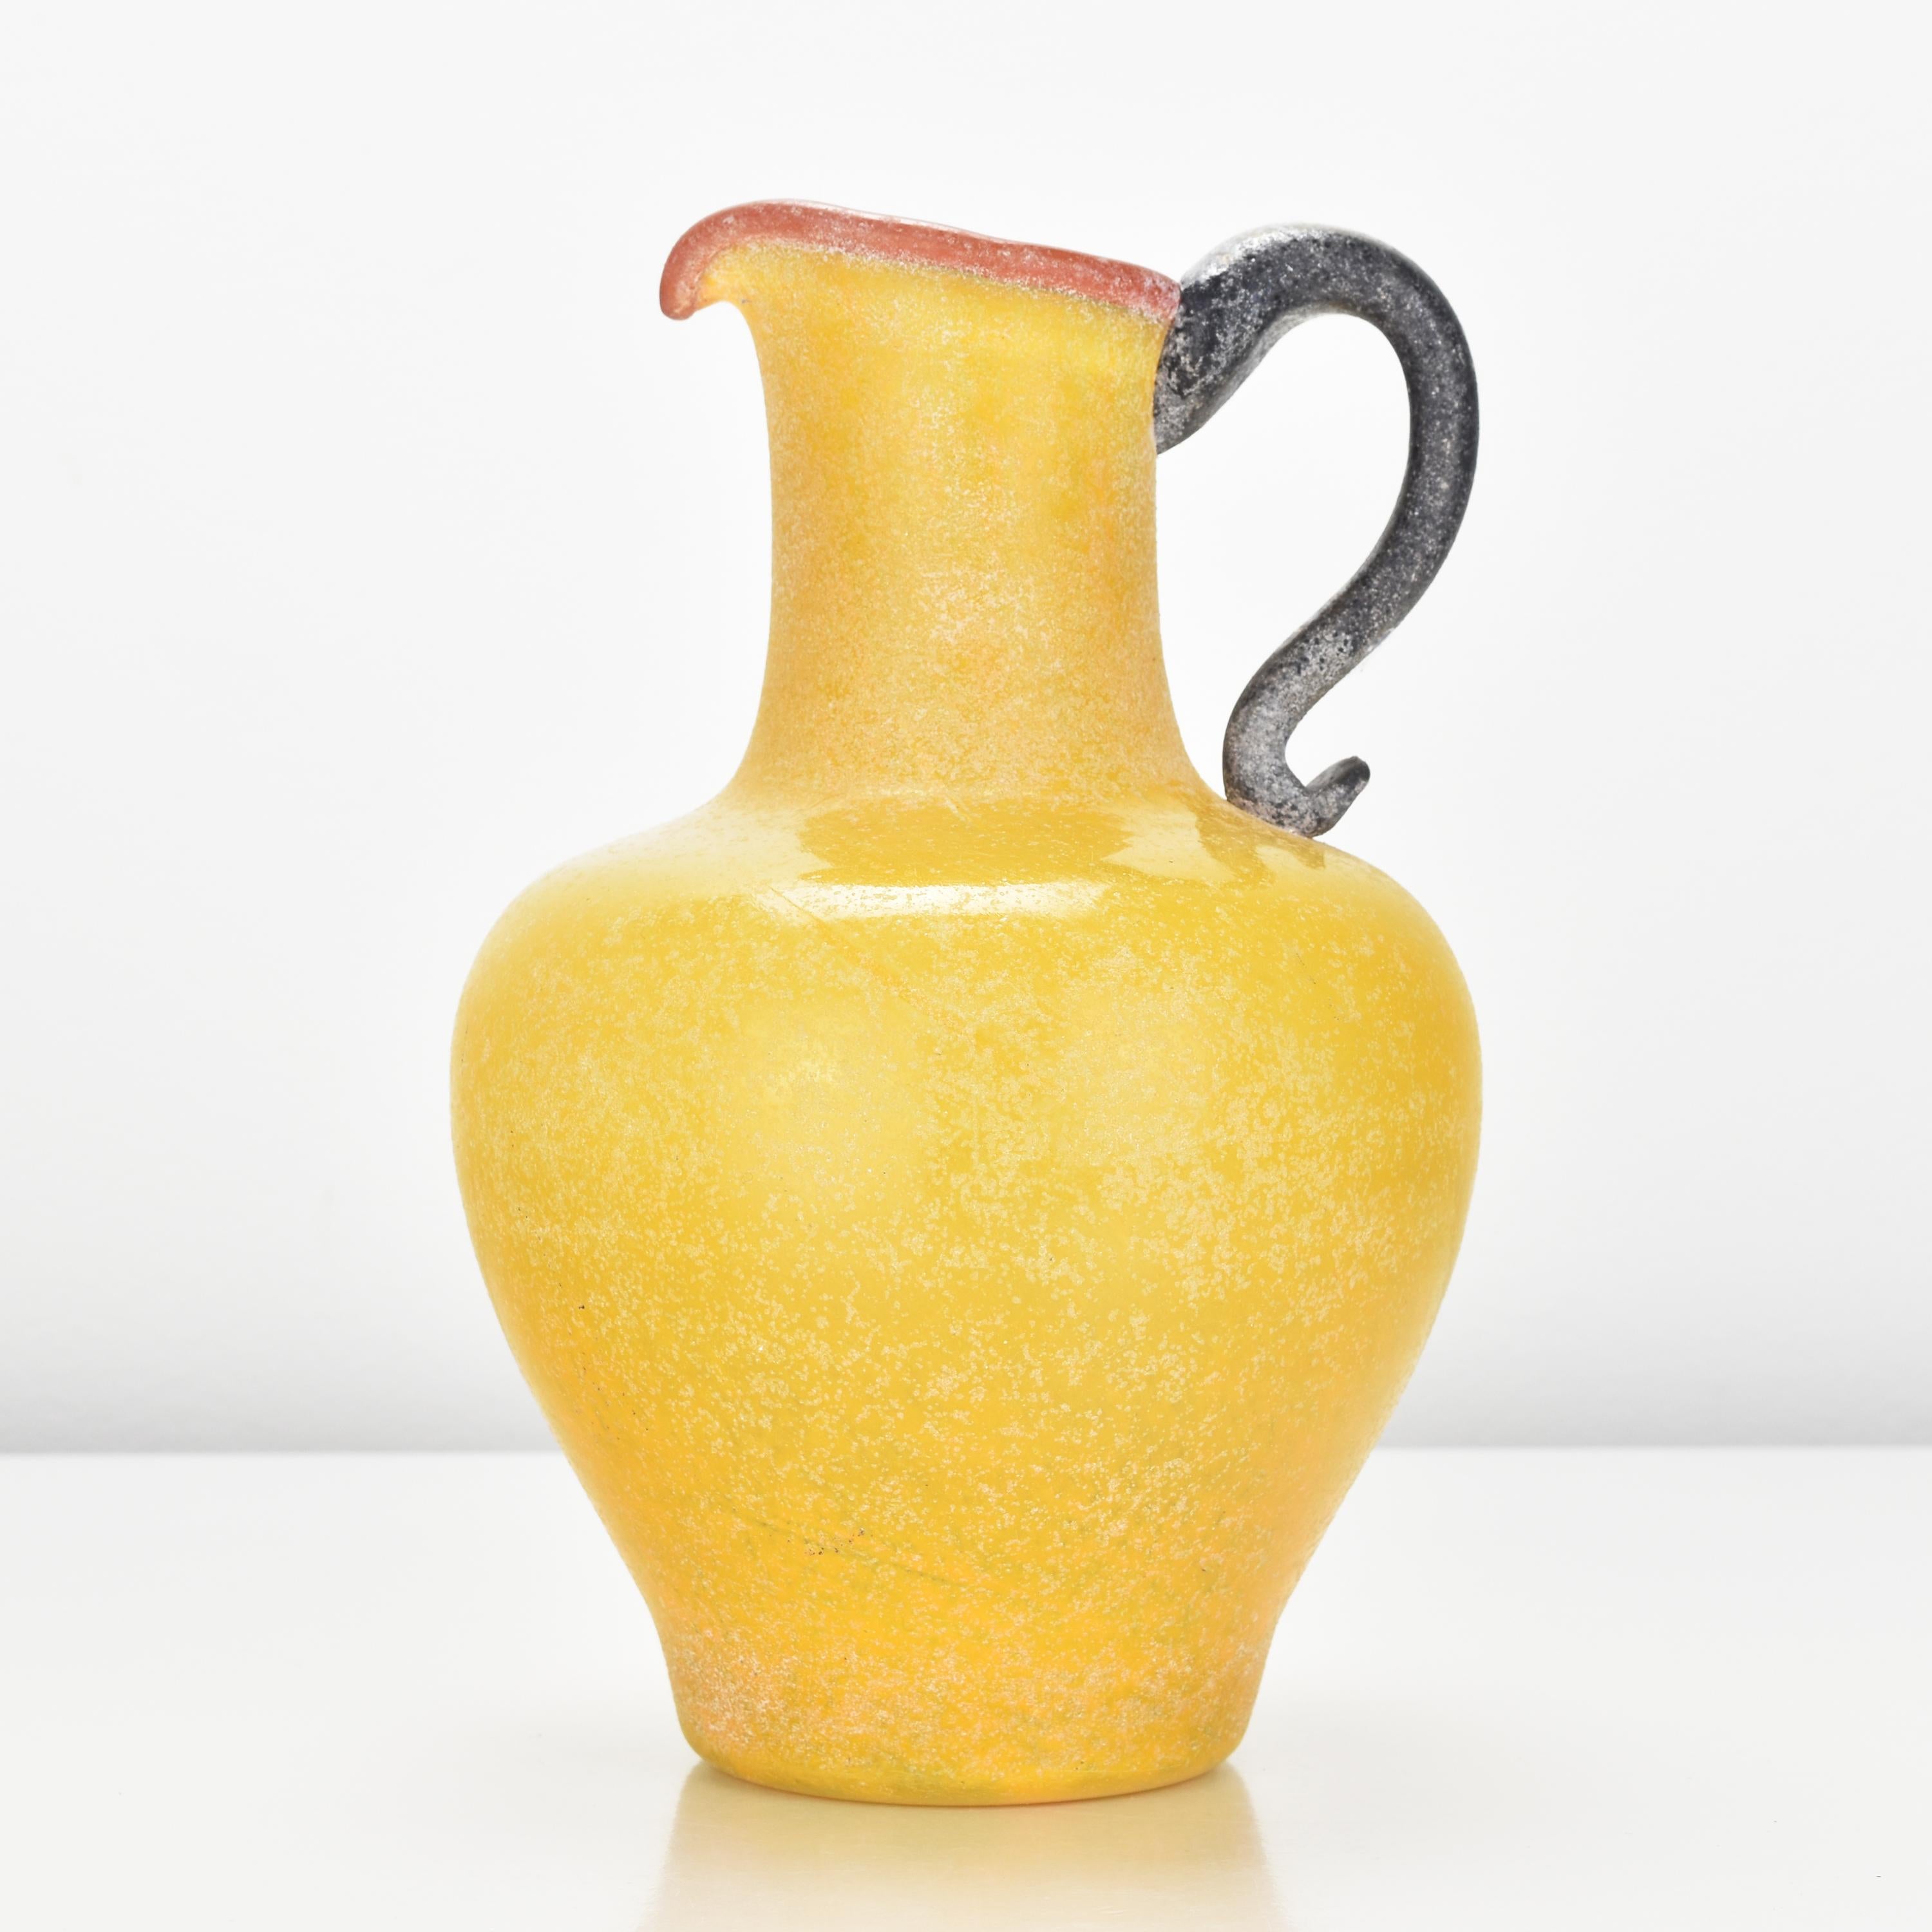 Vase cruche en verre d'art d'un jaune éclatant avec un bord supérieur rouge et une anse noire, probablement réalisé par Archimede Seguso.

Archimede Seguso (1909 - 1999) était un artiste verrier italien éminent et très influent et un maître verrier